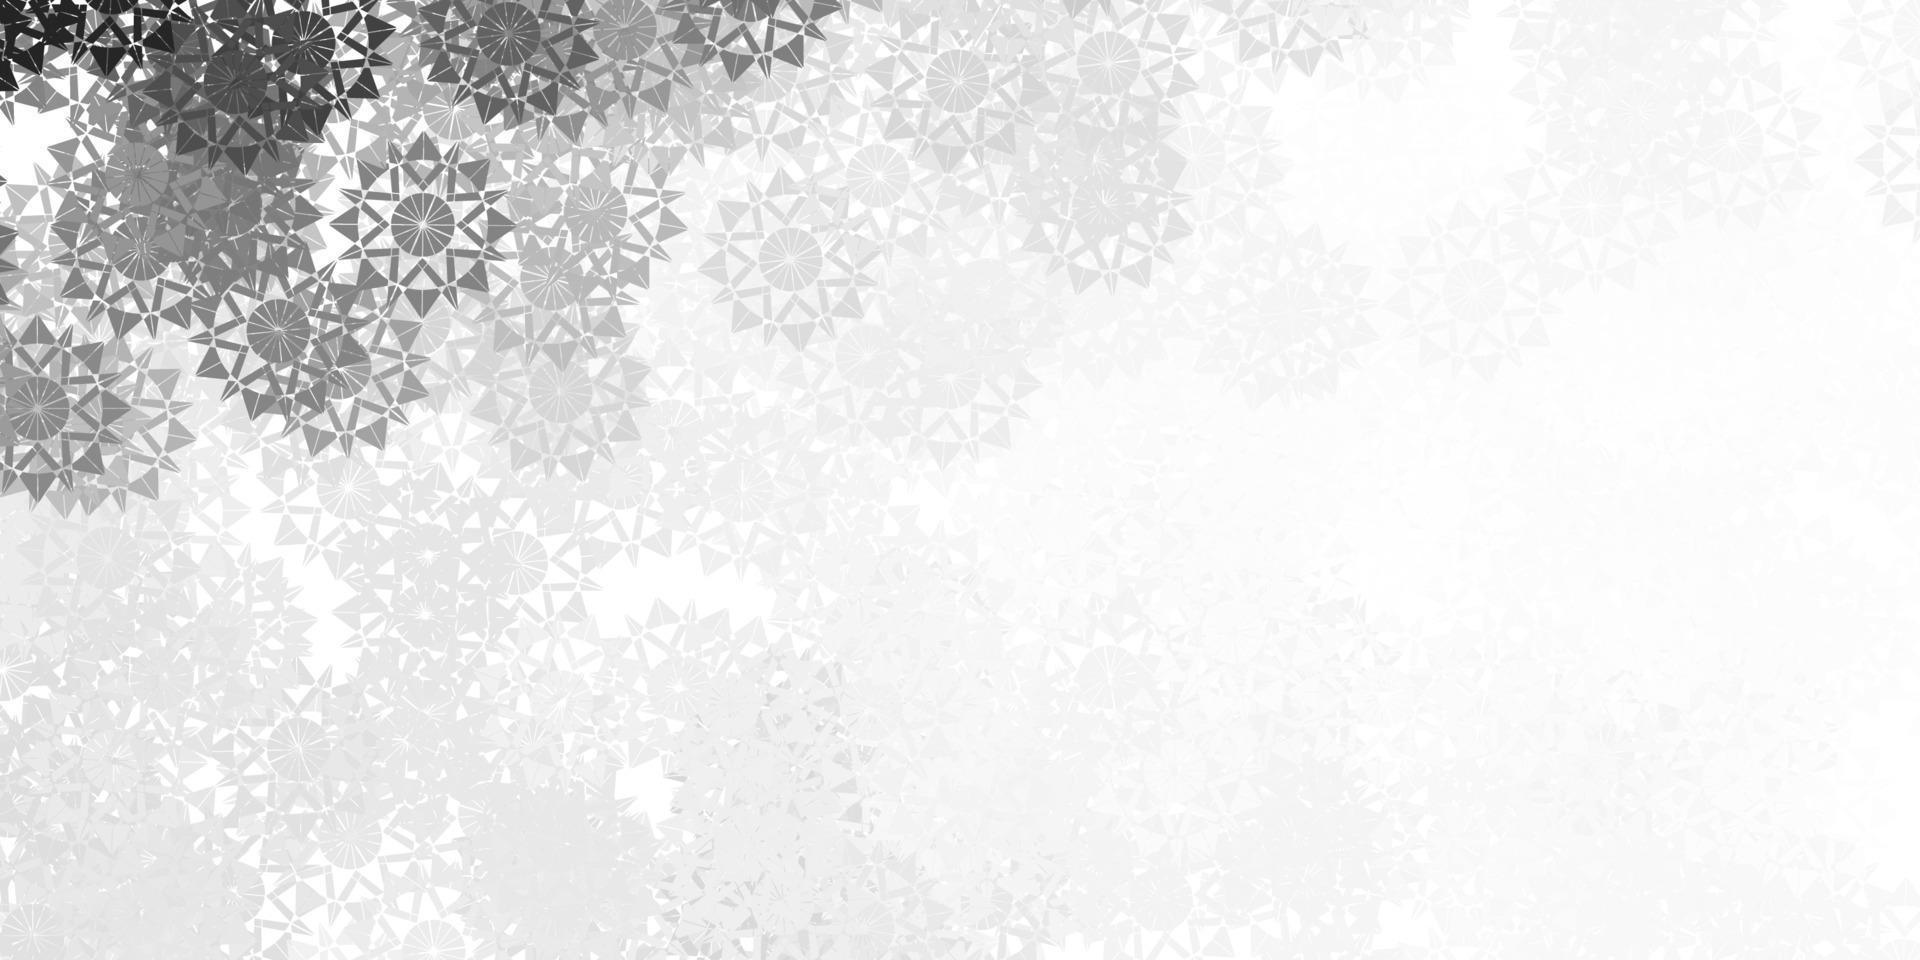 ljusgrå vektorlayout med vackra snöflingor. vektor